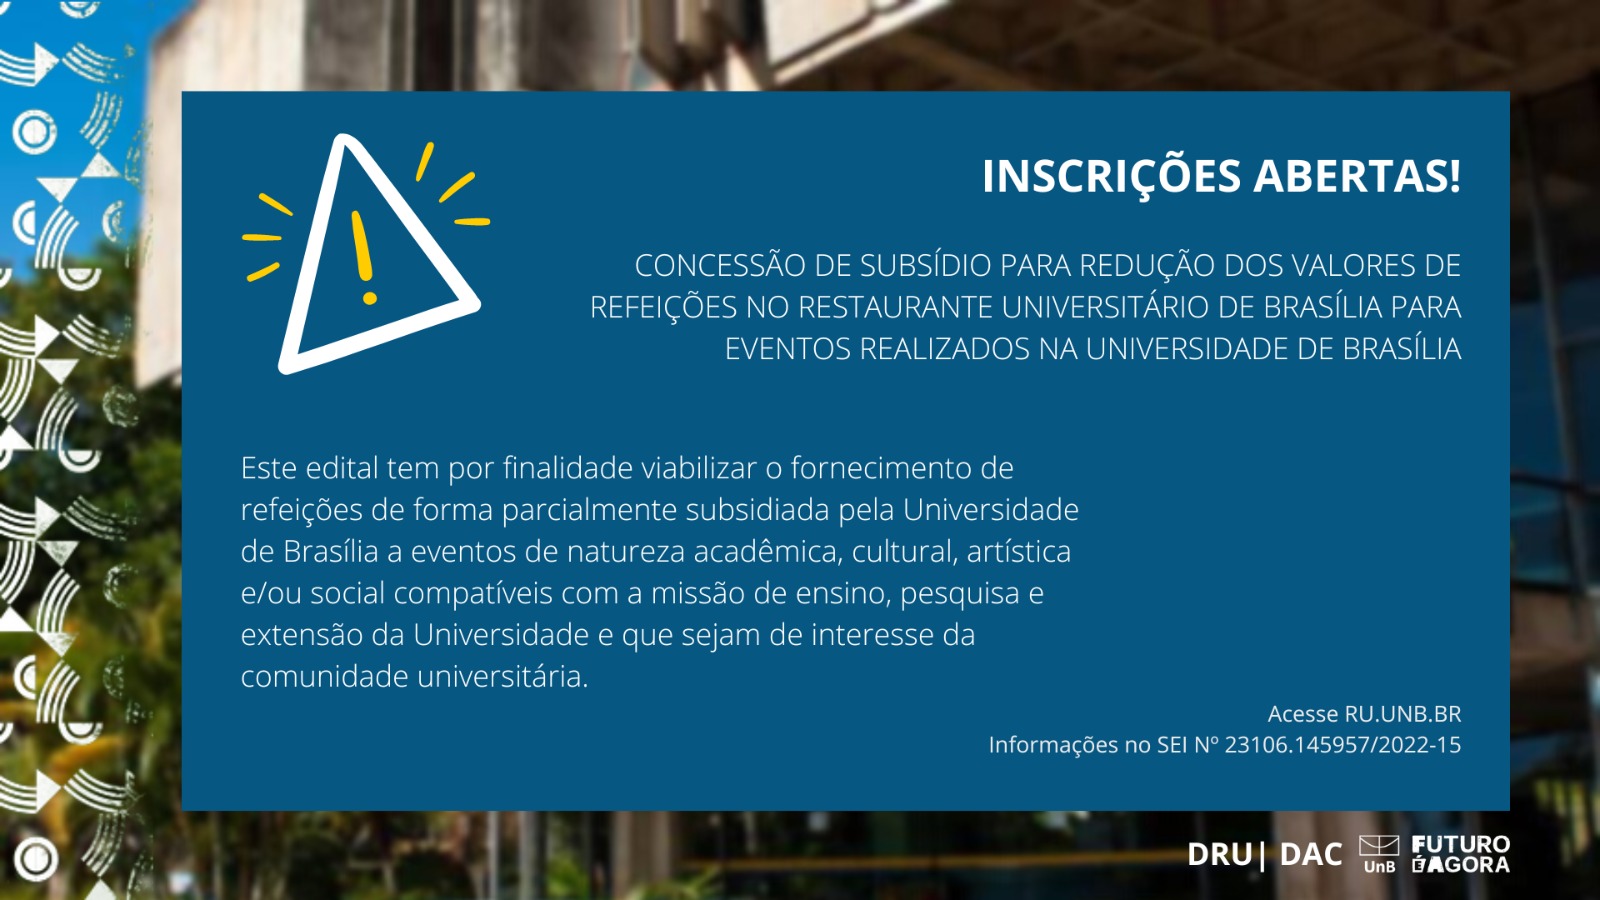 Notícias, RU – Restaurante Universitário